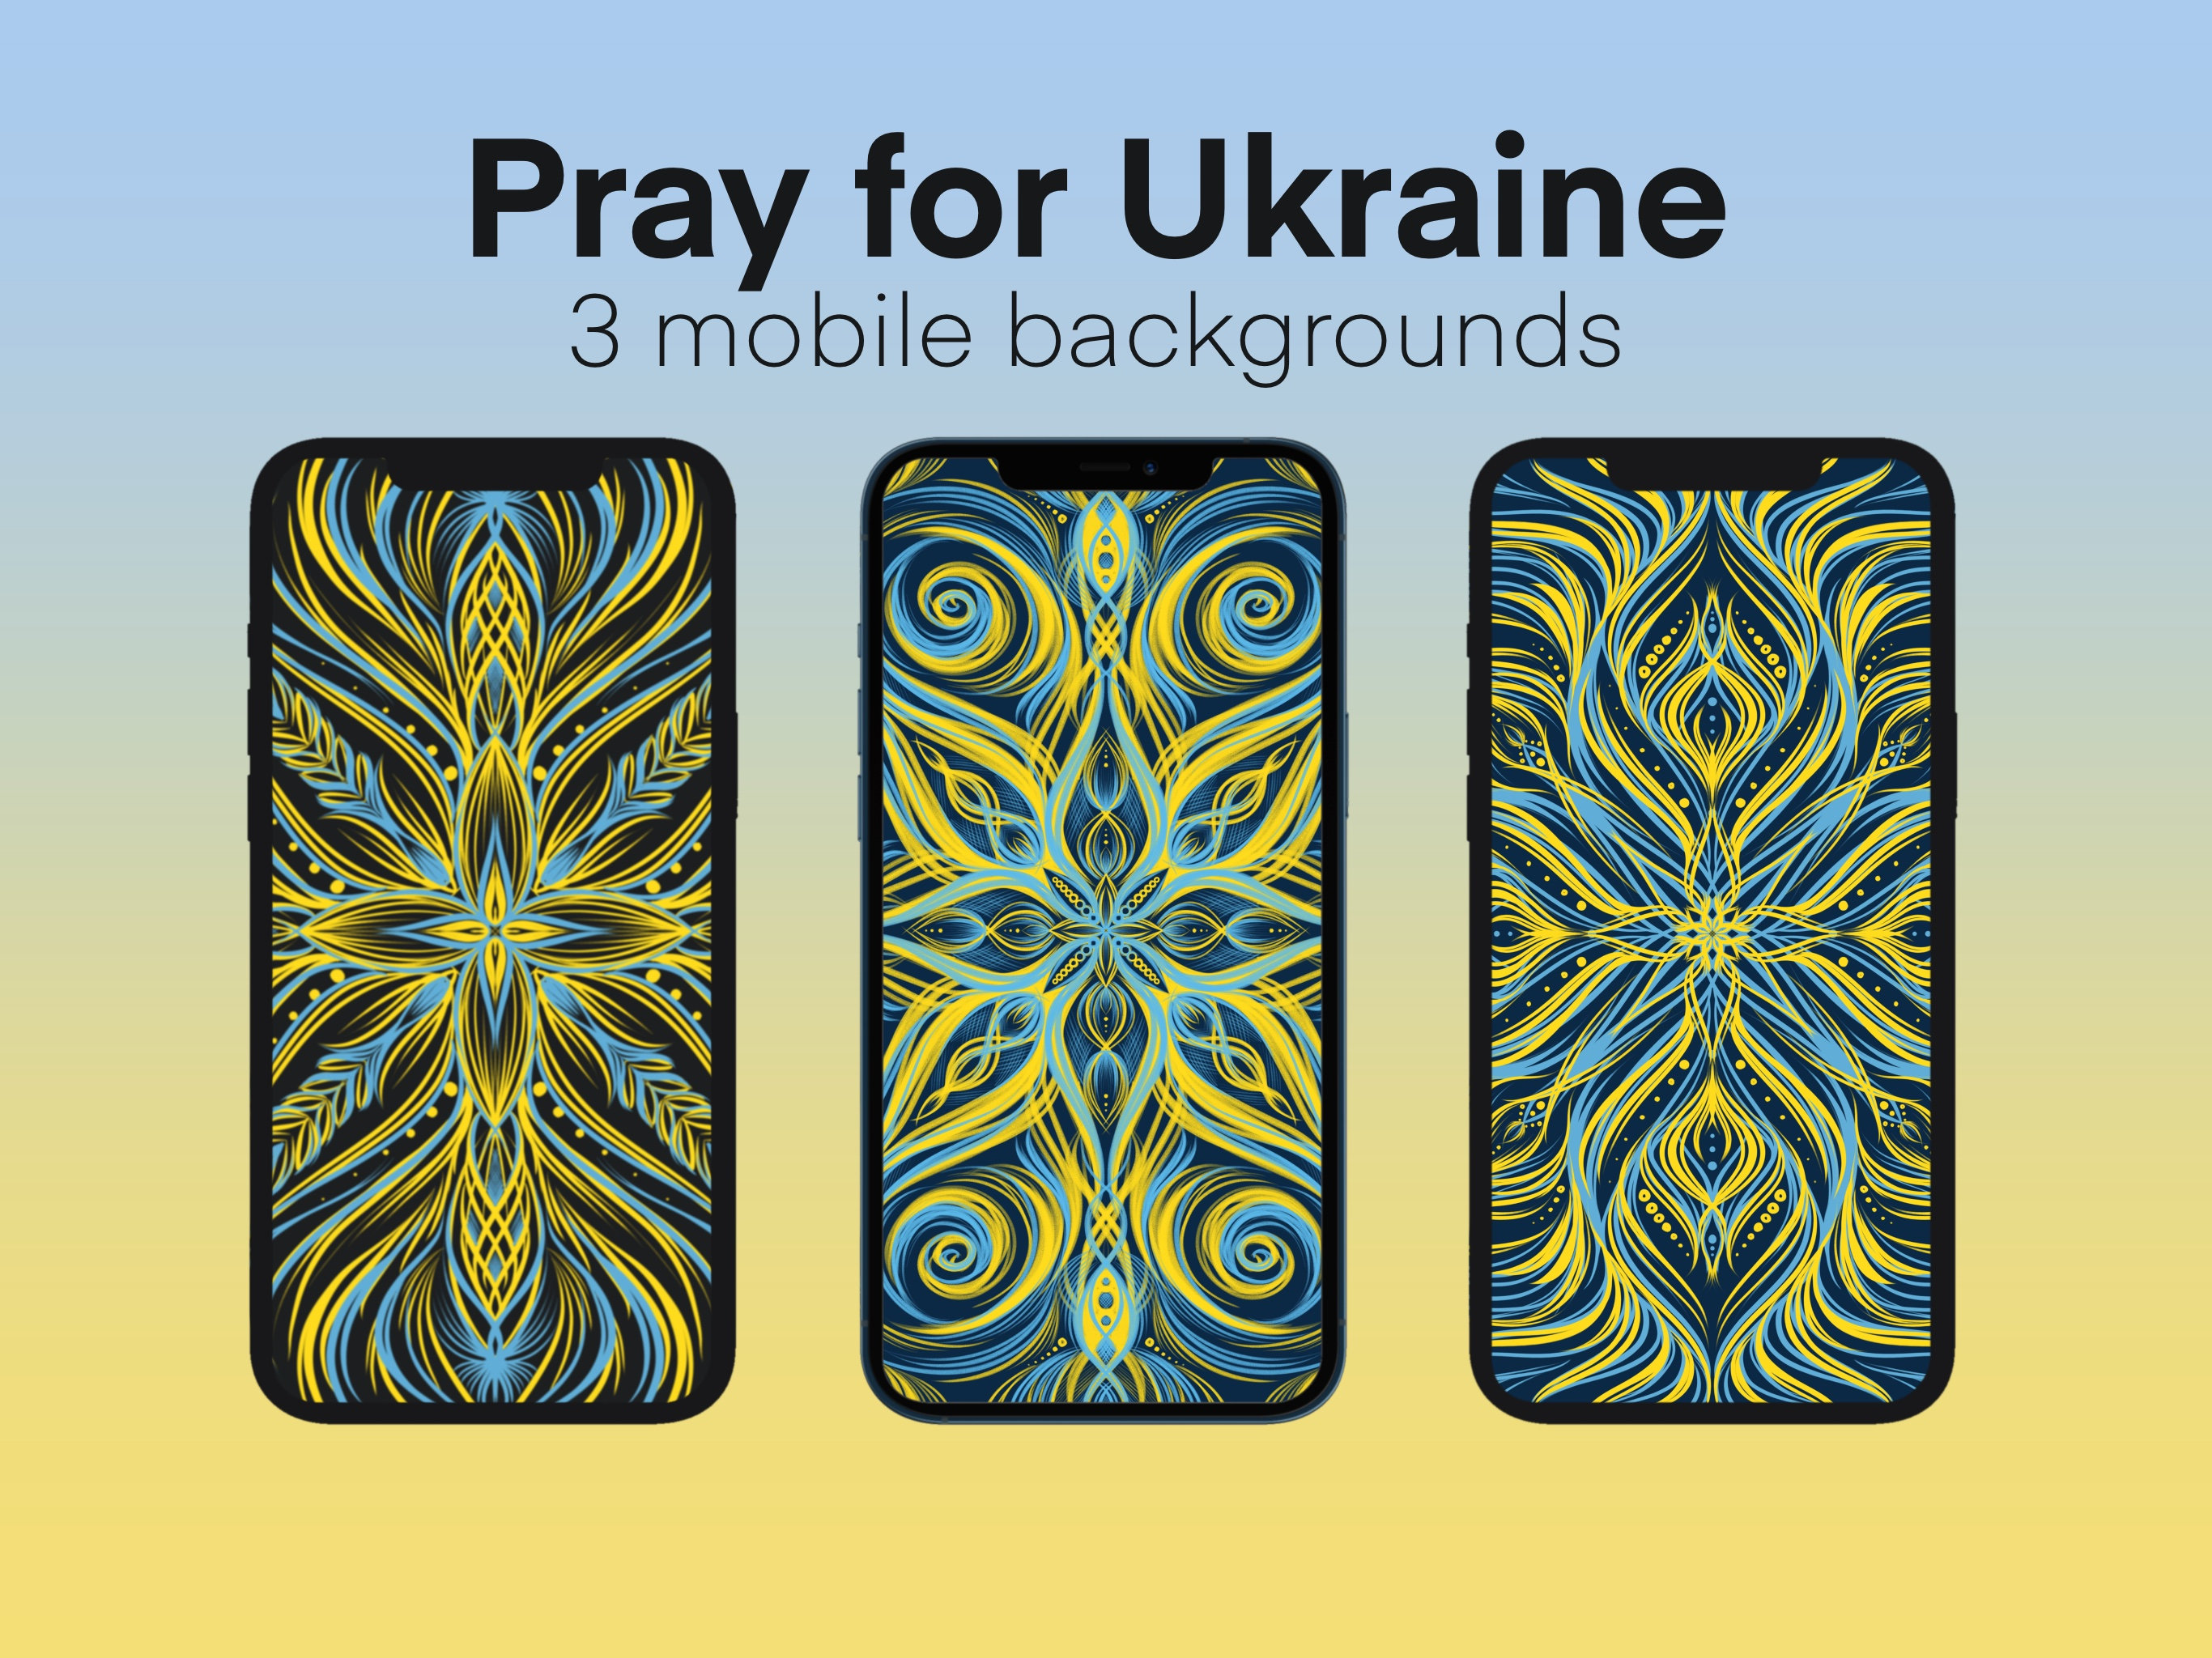 Đất nước Ukraina đang gặp khó khăn, tuy nhiên với sự ủng hộ và cầu nguyện của chúng ta, chúng ta tin rằng mọi điều sẽ sớm được cải thiện. Hãy cảm nhận được sự yêu thương và hy vọng qua hình nền iPhone với thông điệp “Pray for Ukraine” này.